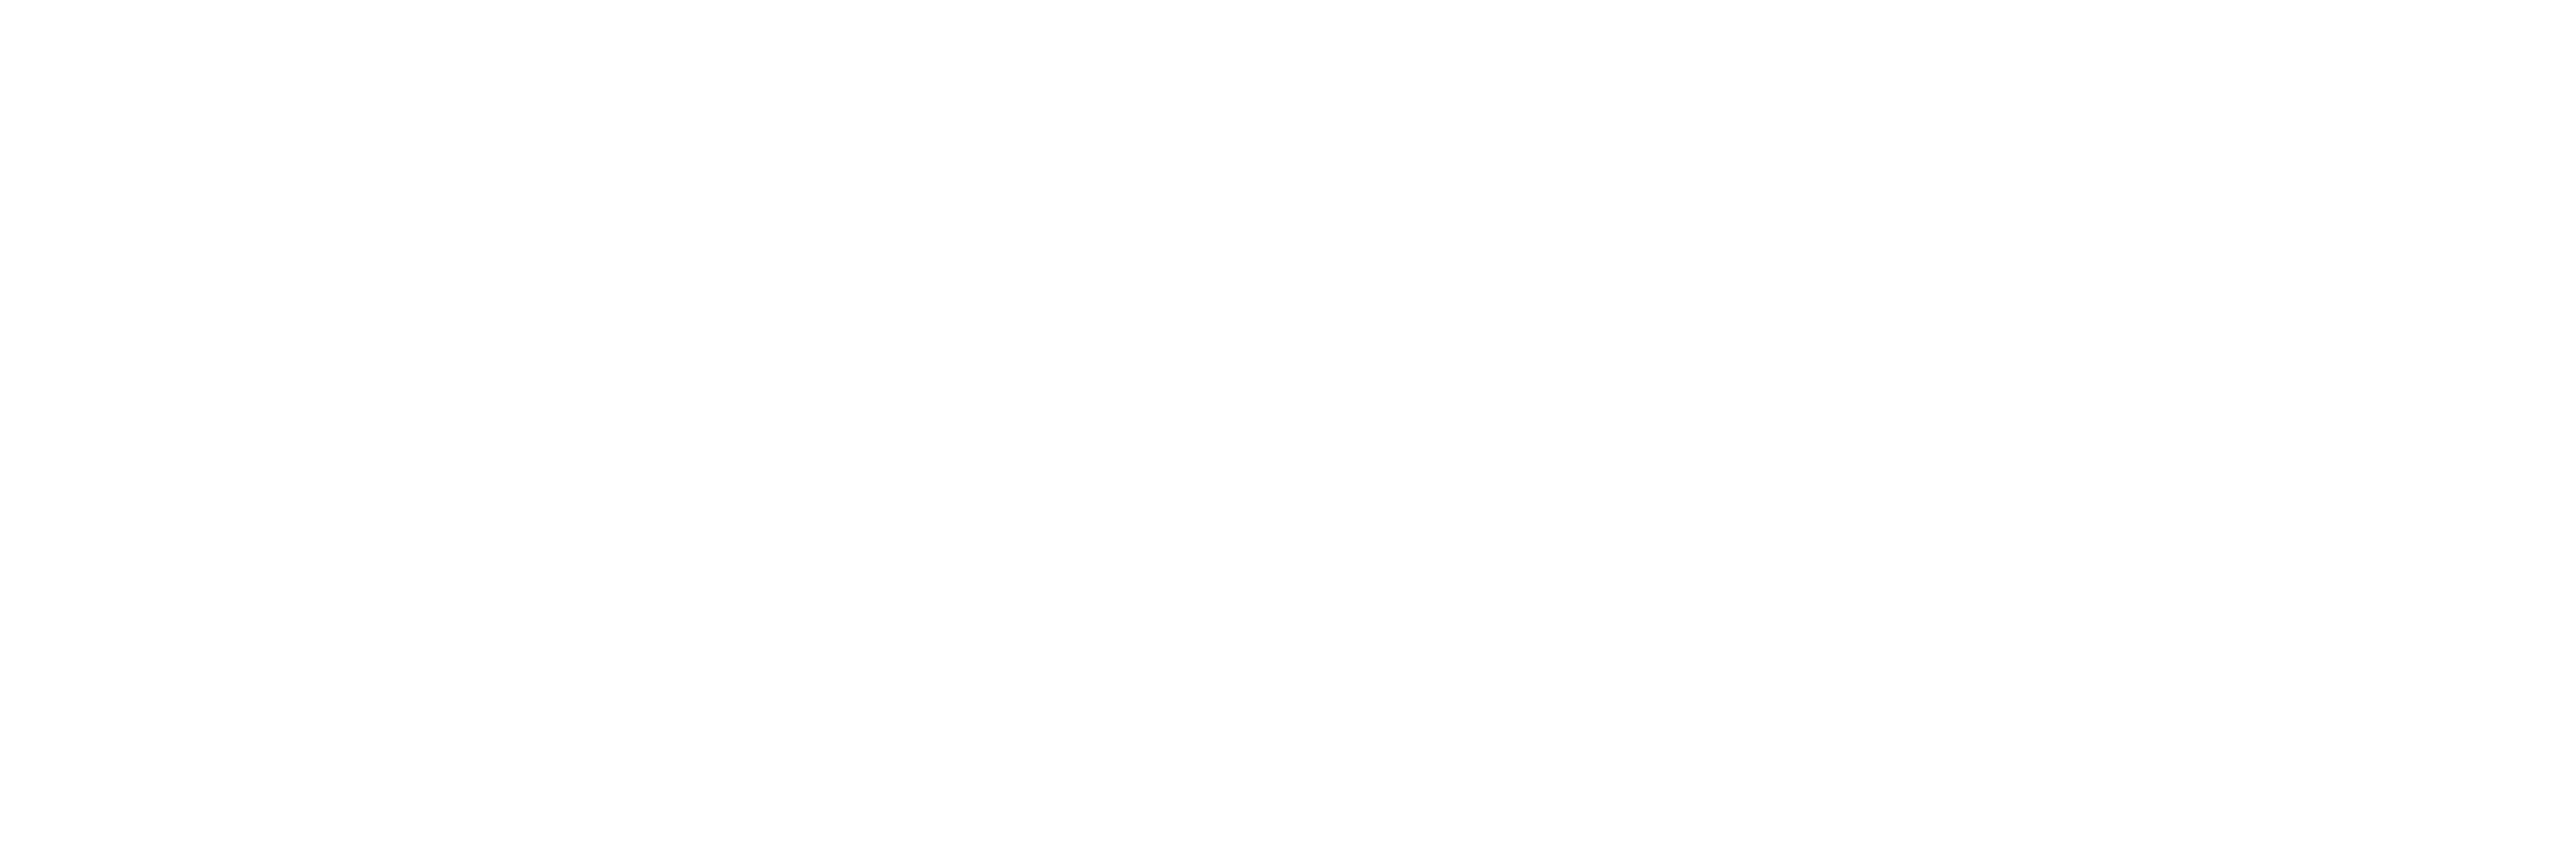 THE COLLIER AT NAPLES LOGOS Horizontal White